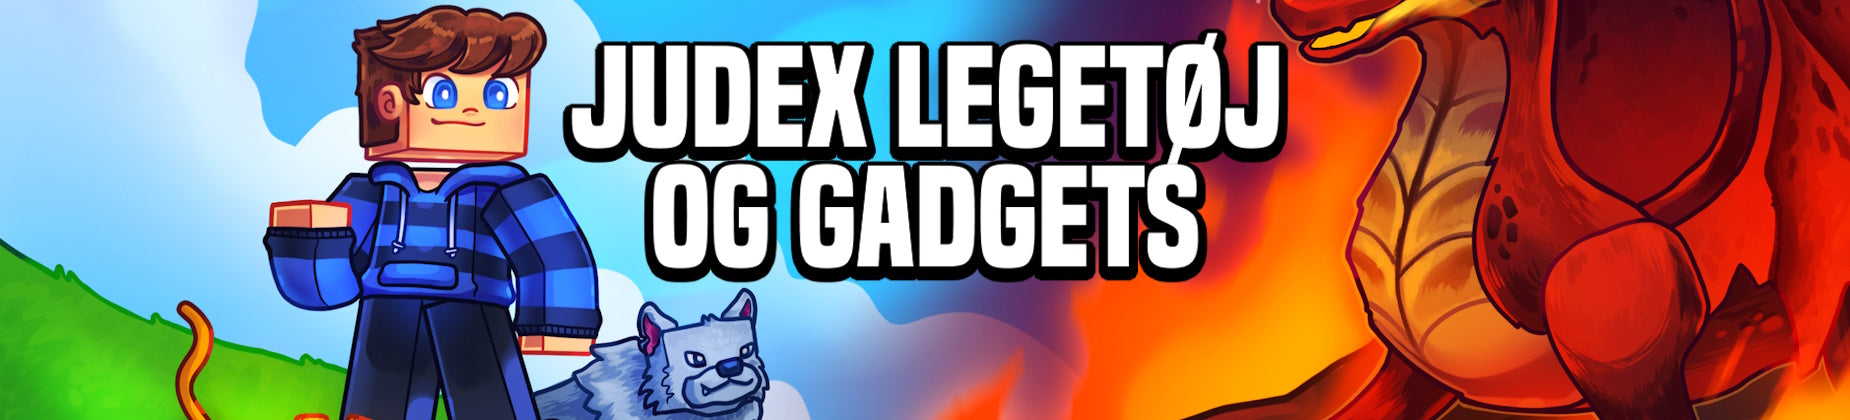 judex legetøj og gadgets - minecraft youtuber merchandise geekd